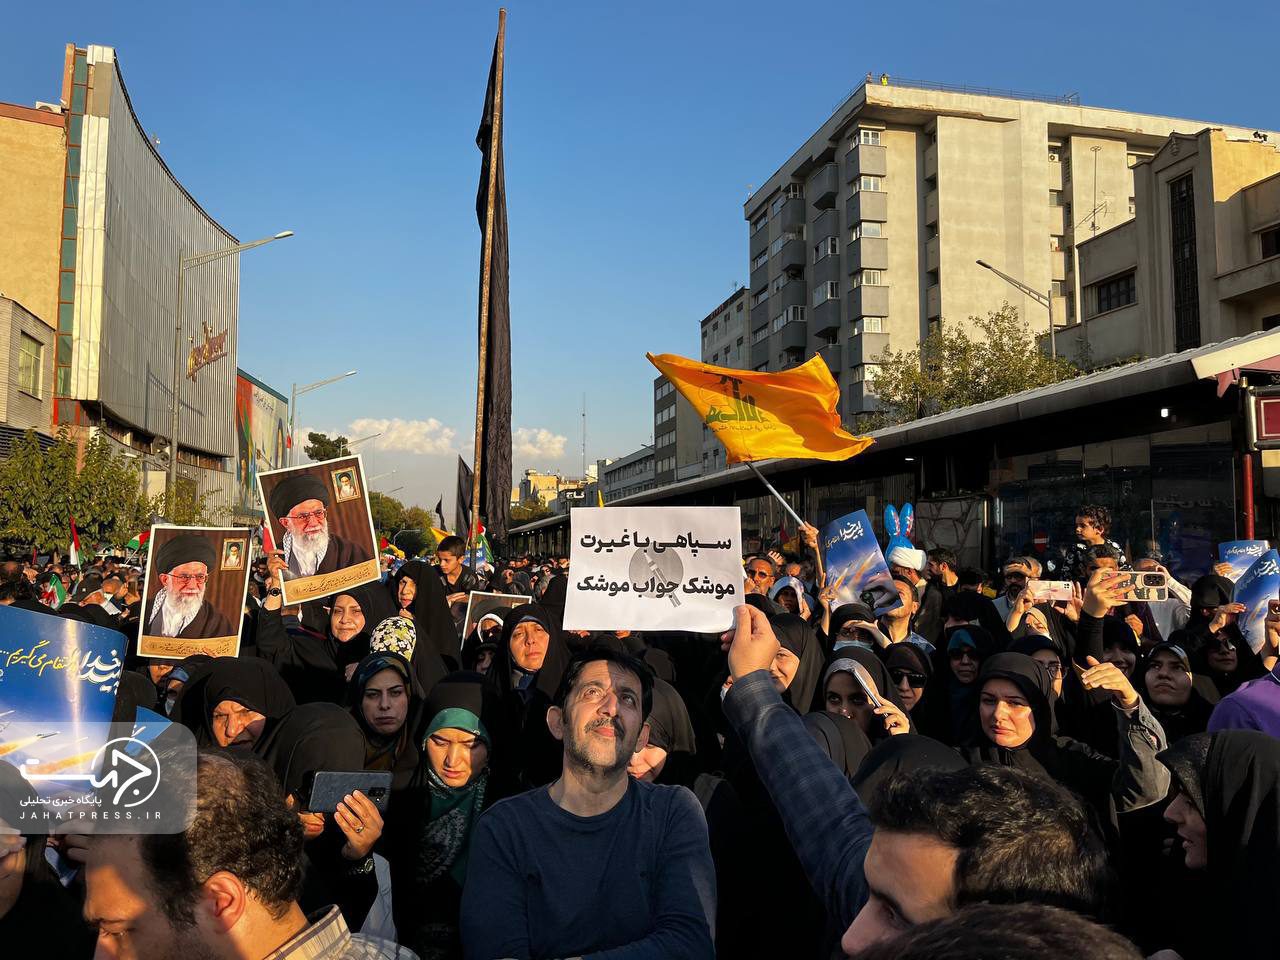 حضور پرشور مردم تهران در راهپیمایی حمایت از مردم مظلوم فلسطین